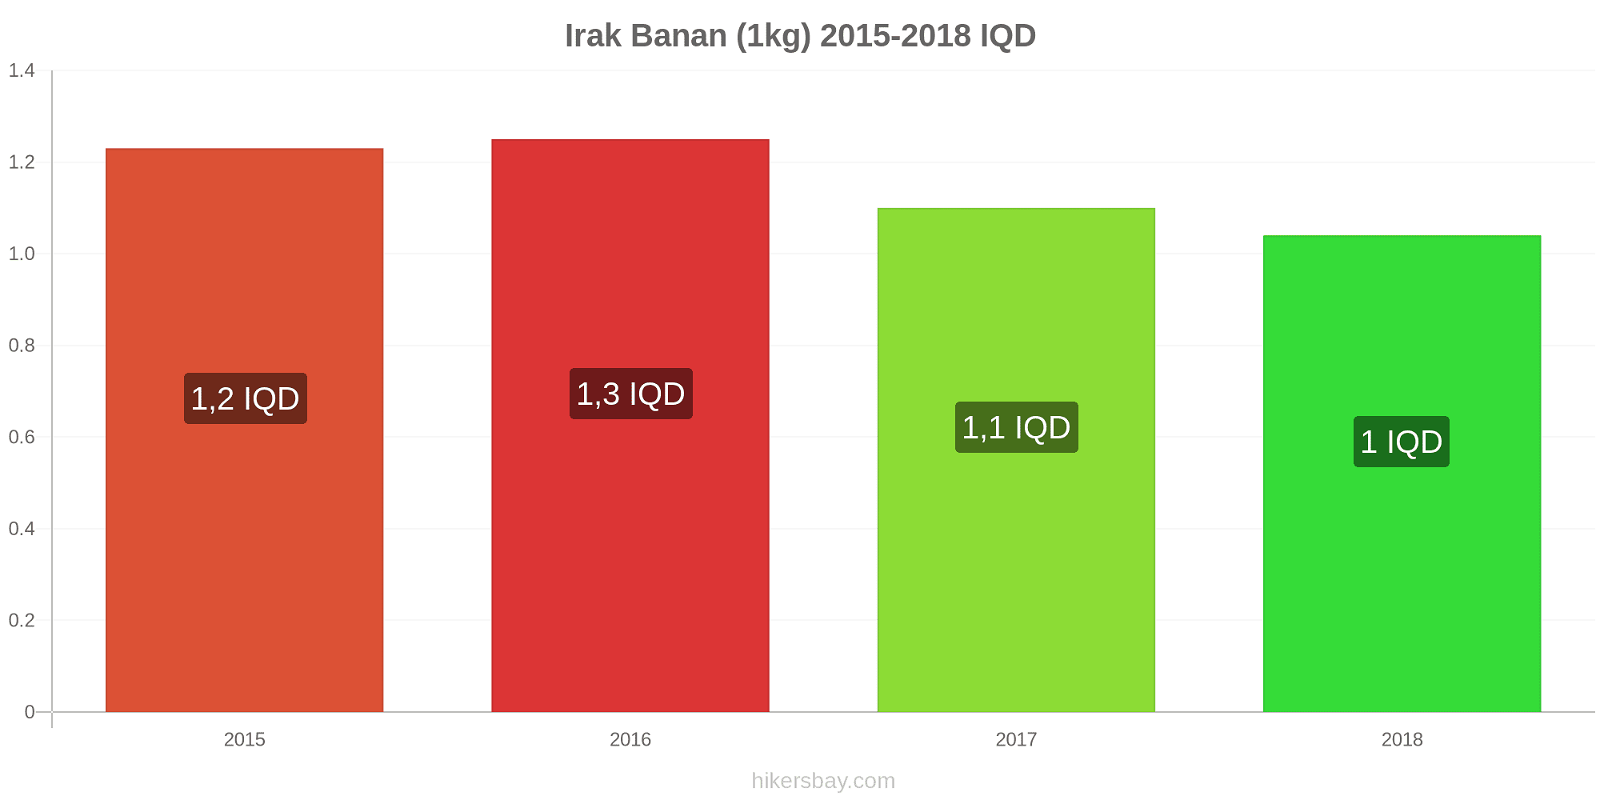 Irak prisändringar Bananer (1kg) hikersbay.com